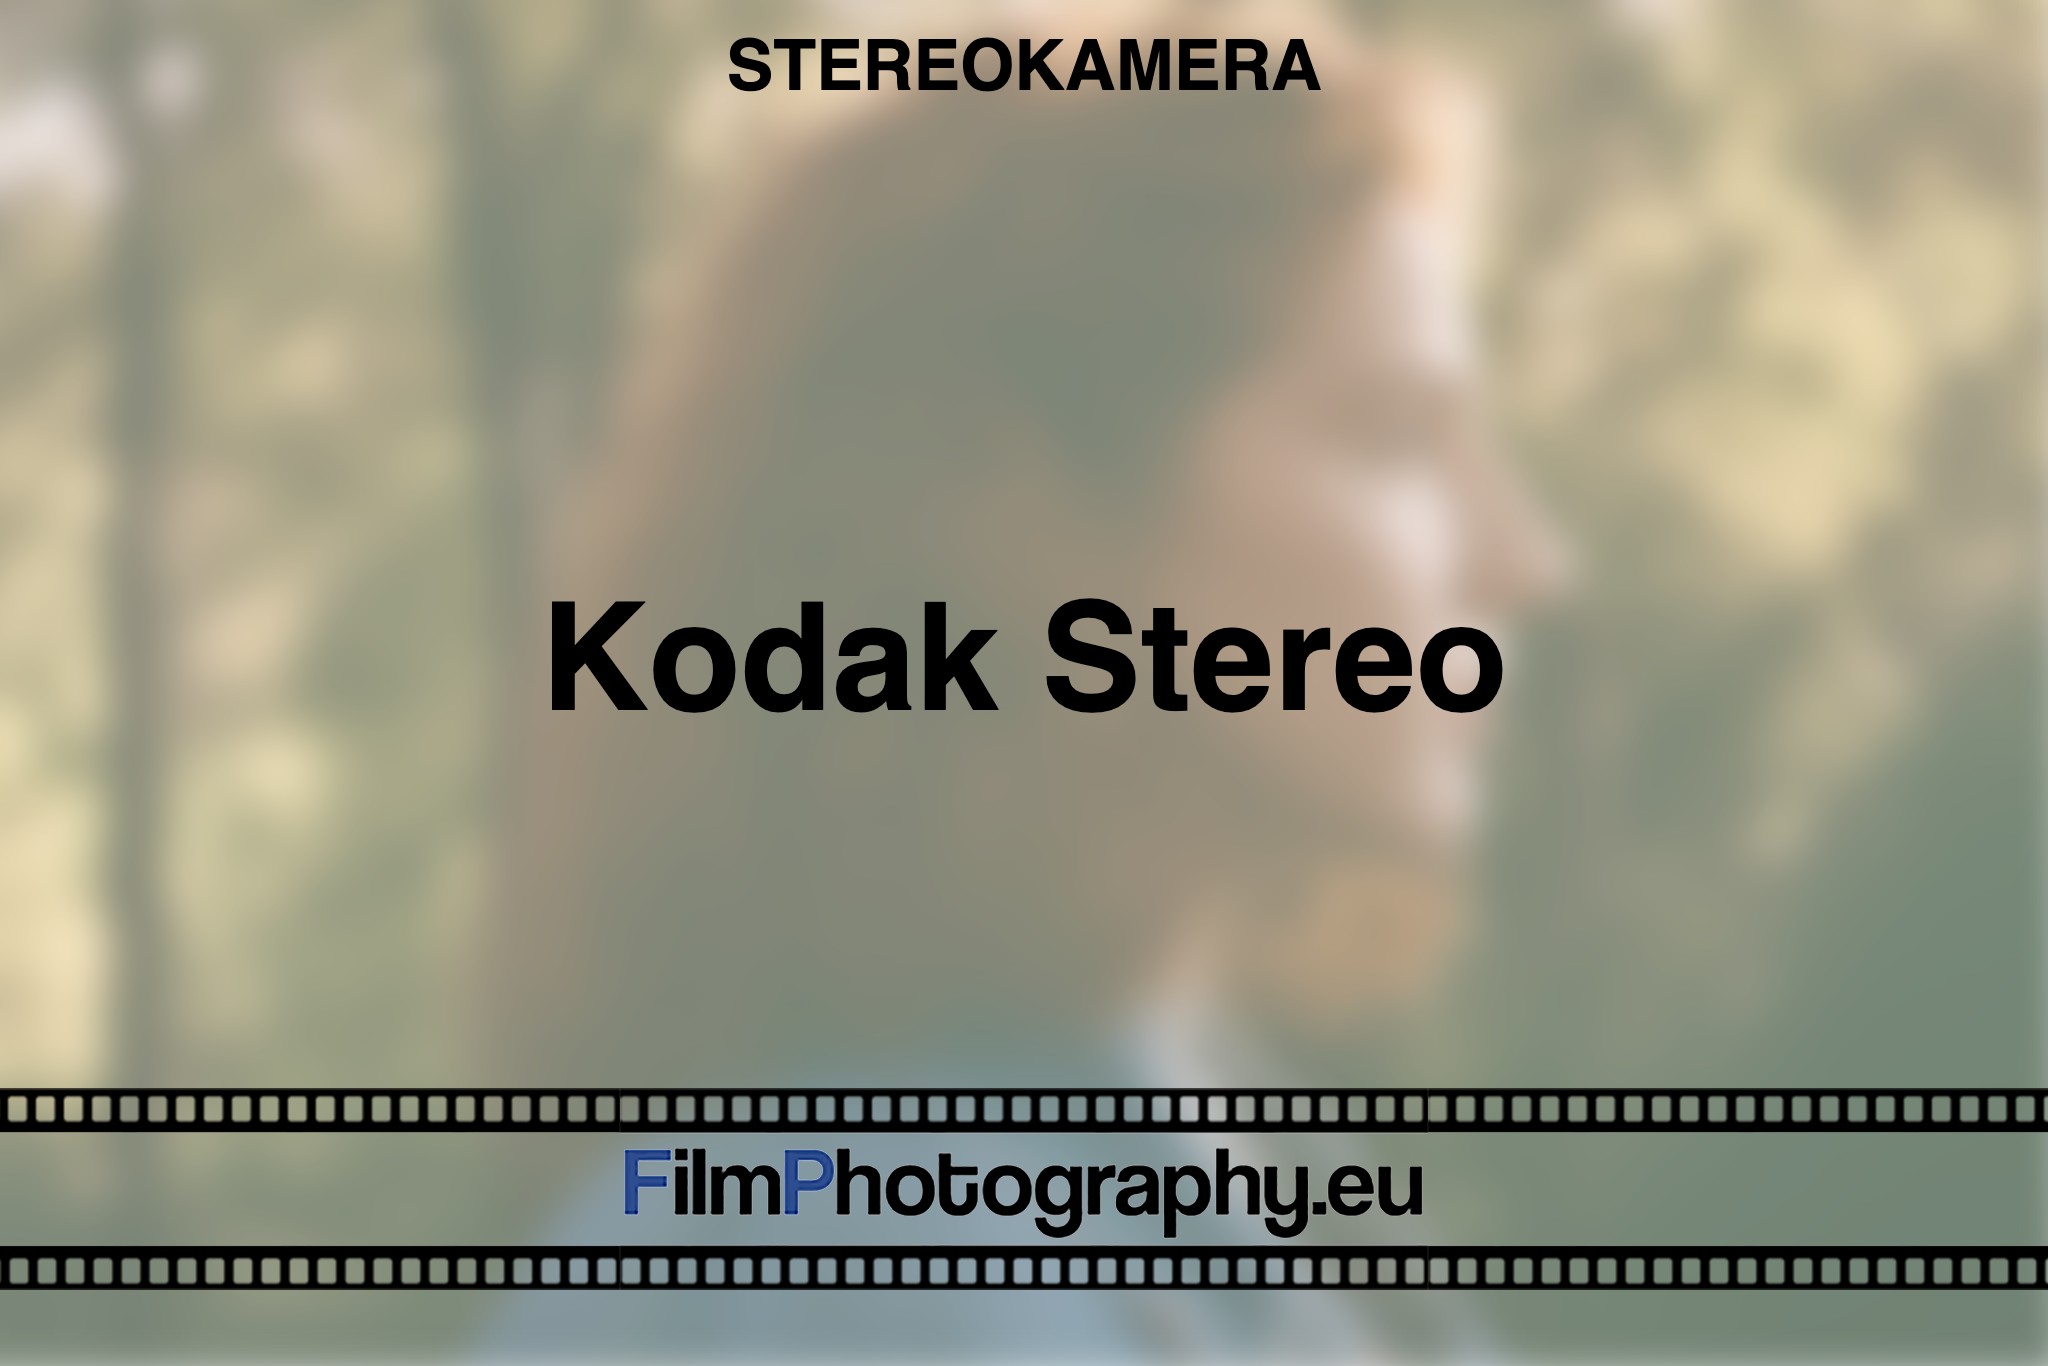 kodak-stereo-stereokamera-bnv